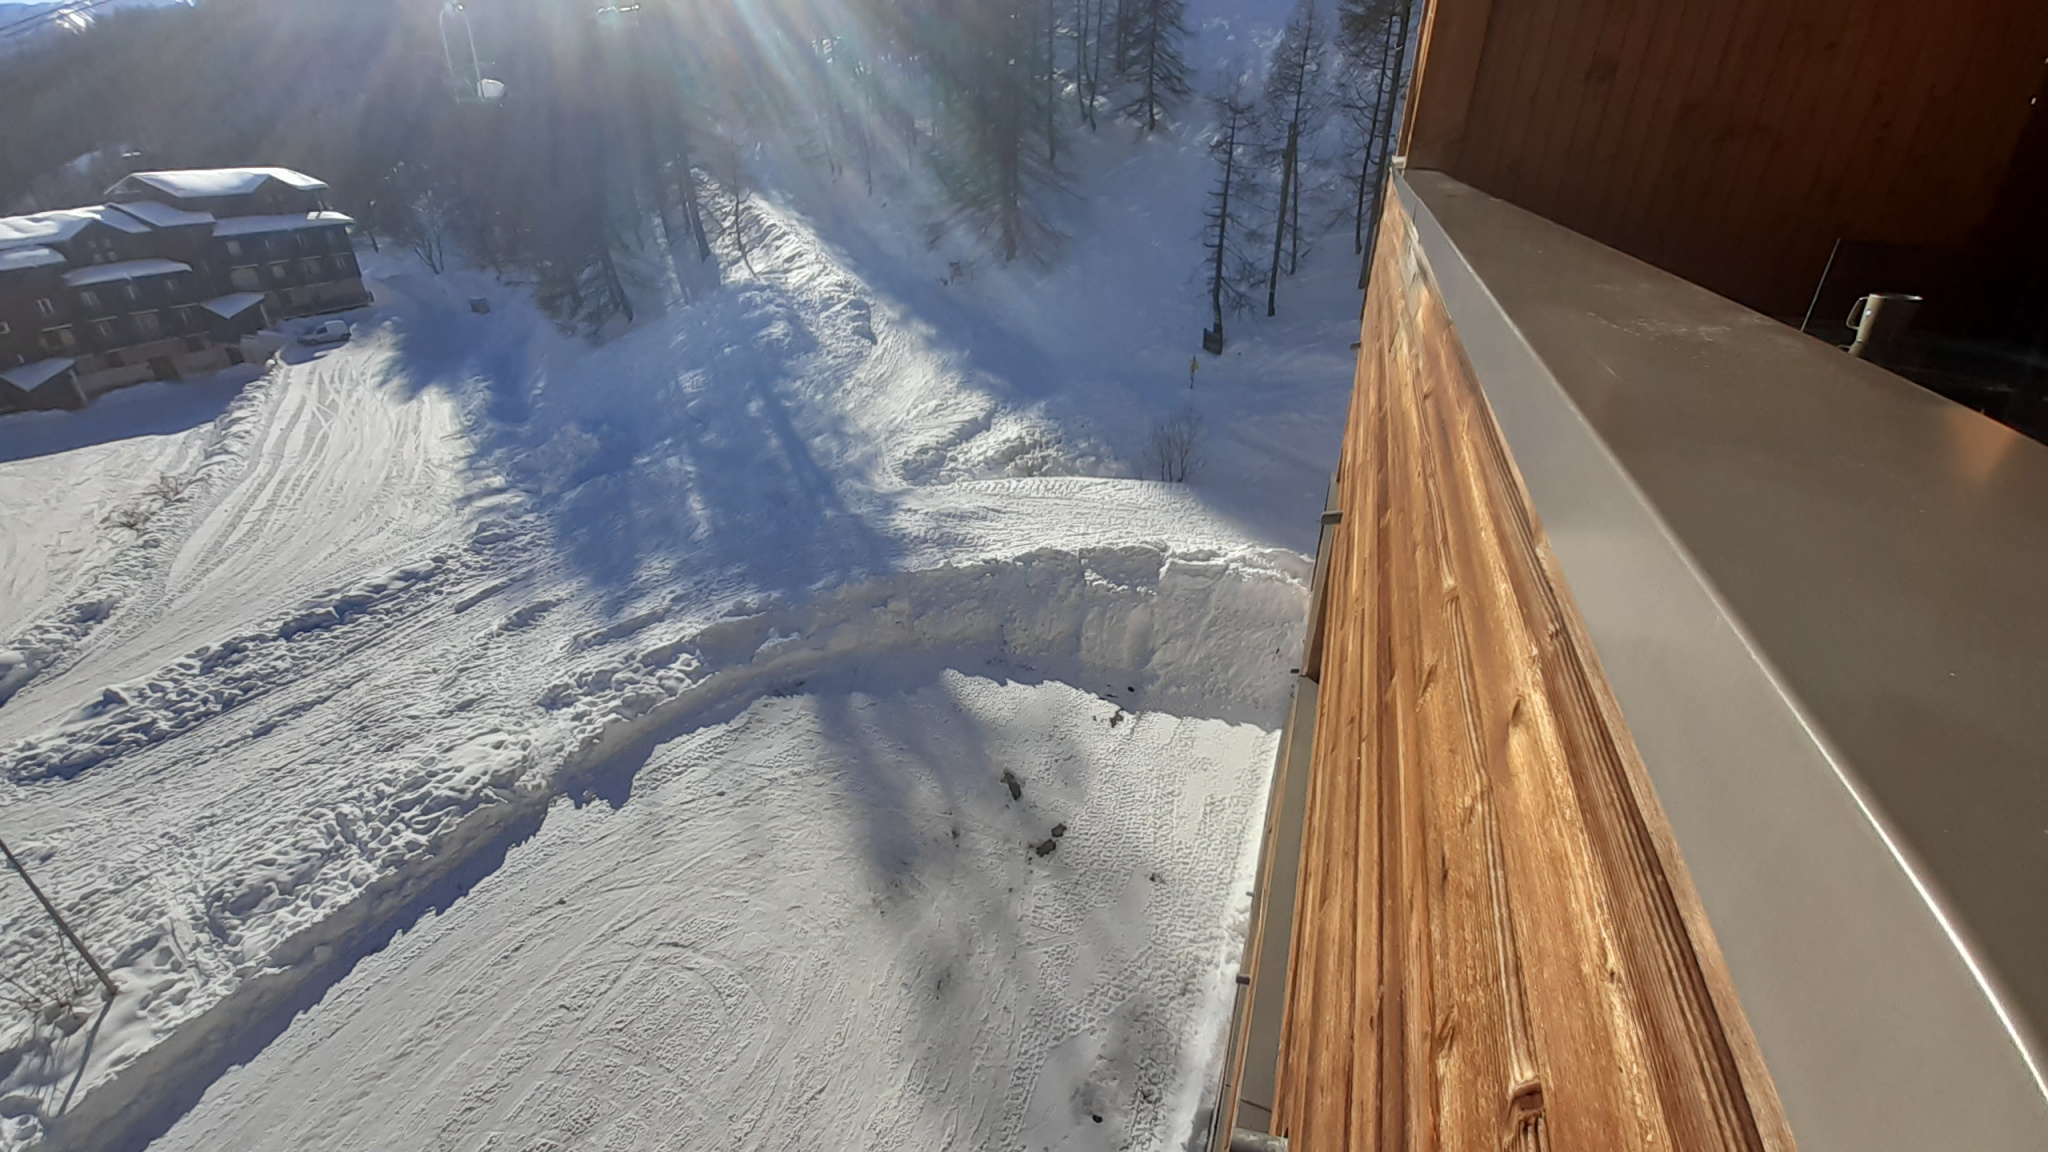 Départ ski télésiège au pied de la résidence. Retour à ski par le chemin